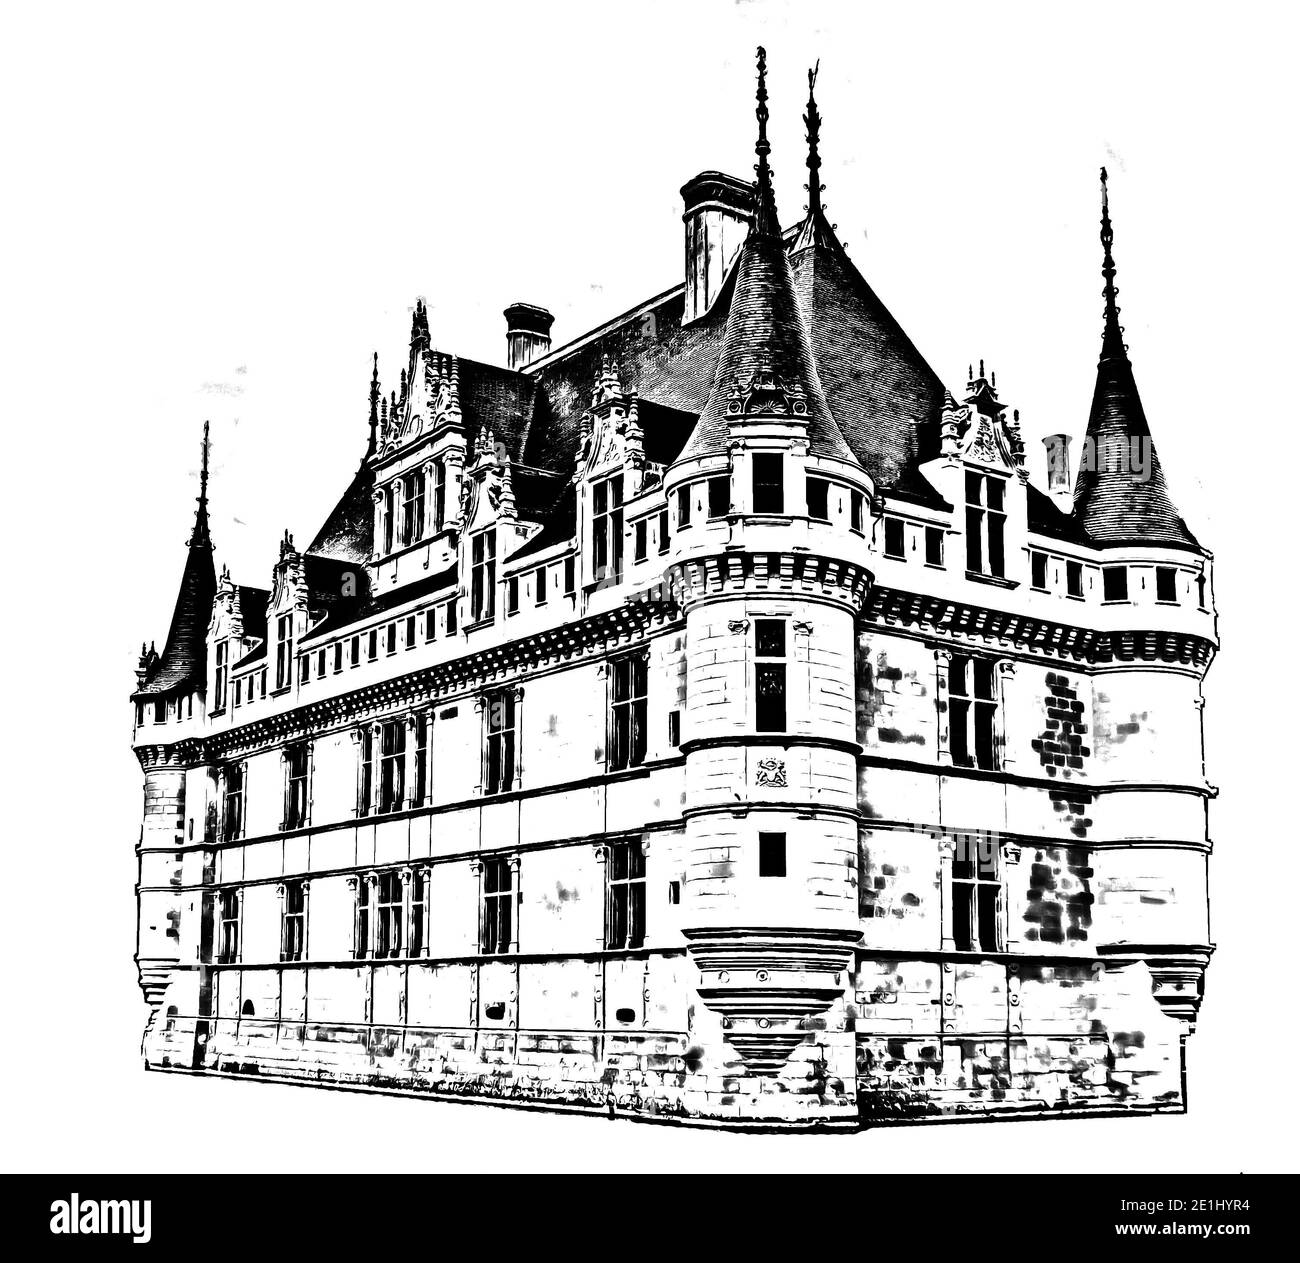 Grafico Castello Azay le Rideau (Castello d'Azay le Rideau) su sfondo bianco, Indre et Loire, Valle della Loira, Francia. Stile di disegno a matita. Foto Stock